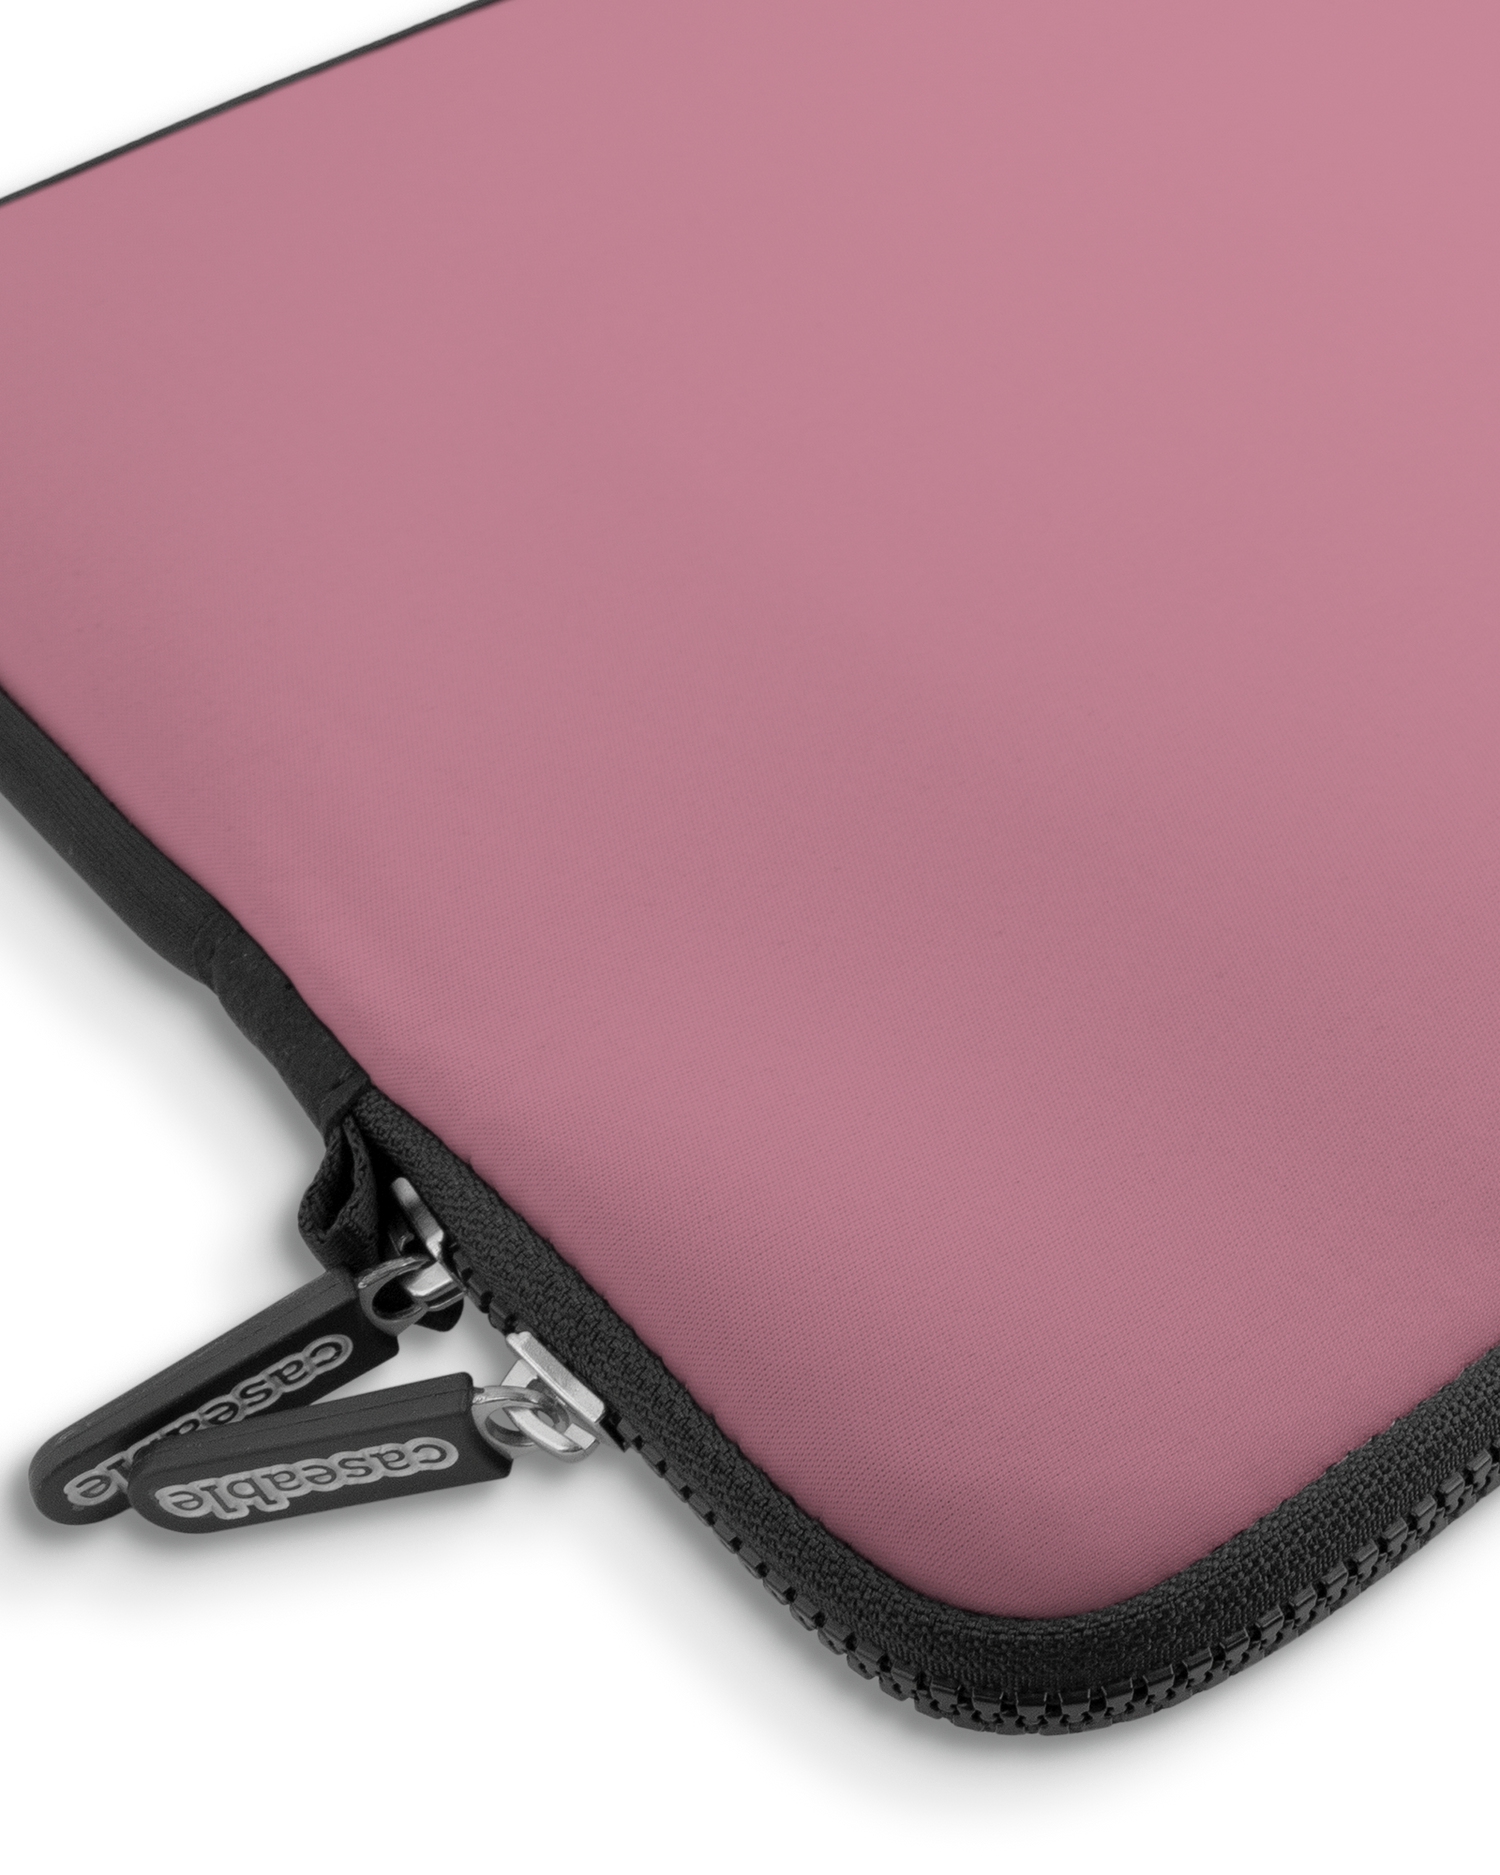 WILD ROSE Premium Laptoptasche 15 Zoll mit Gerät im Inneren